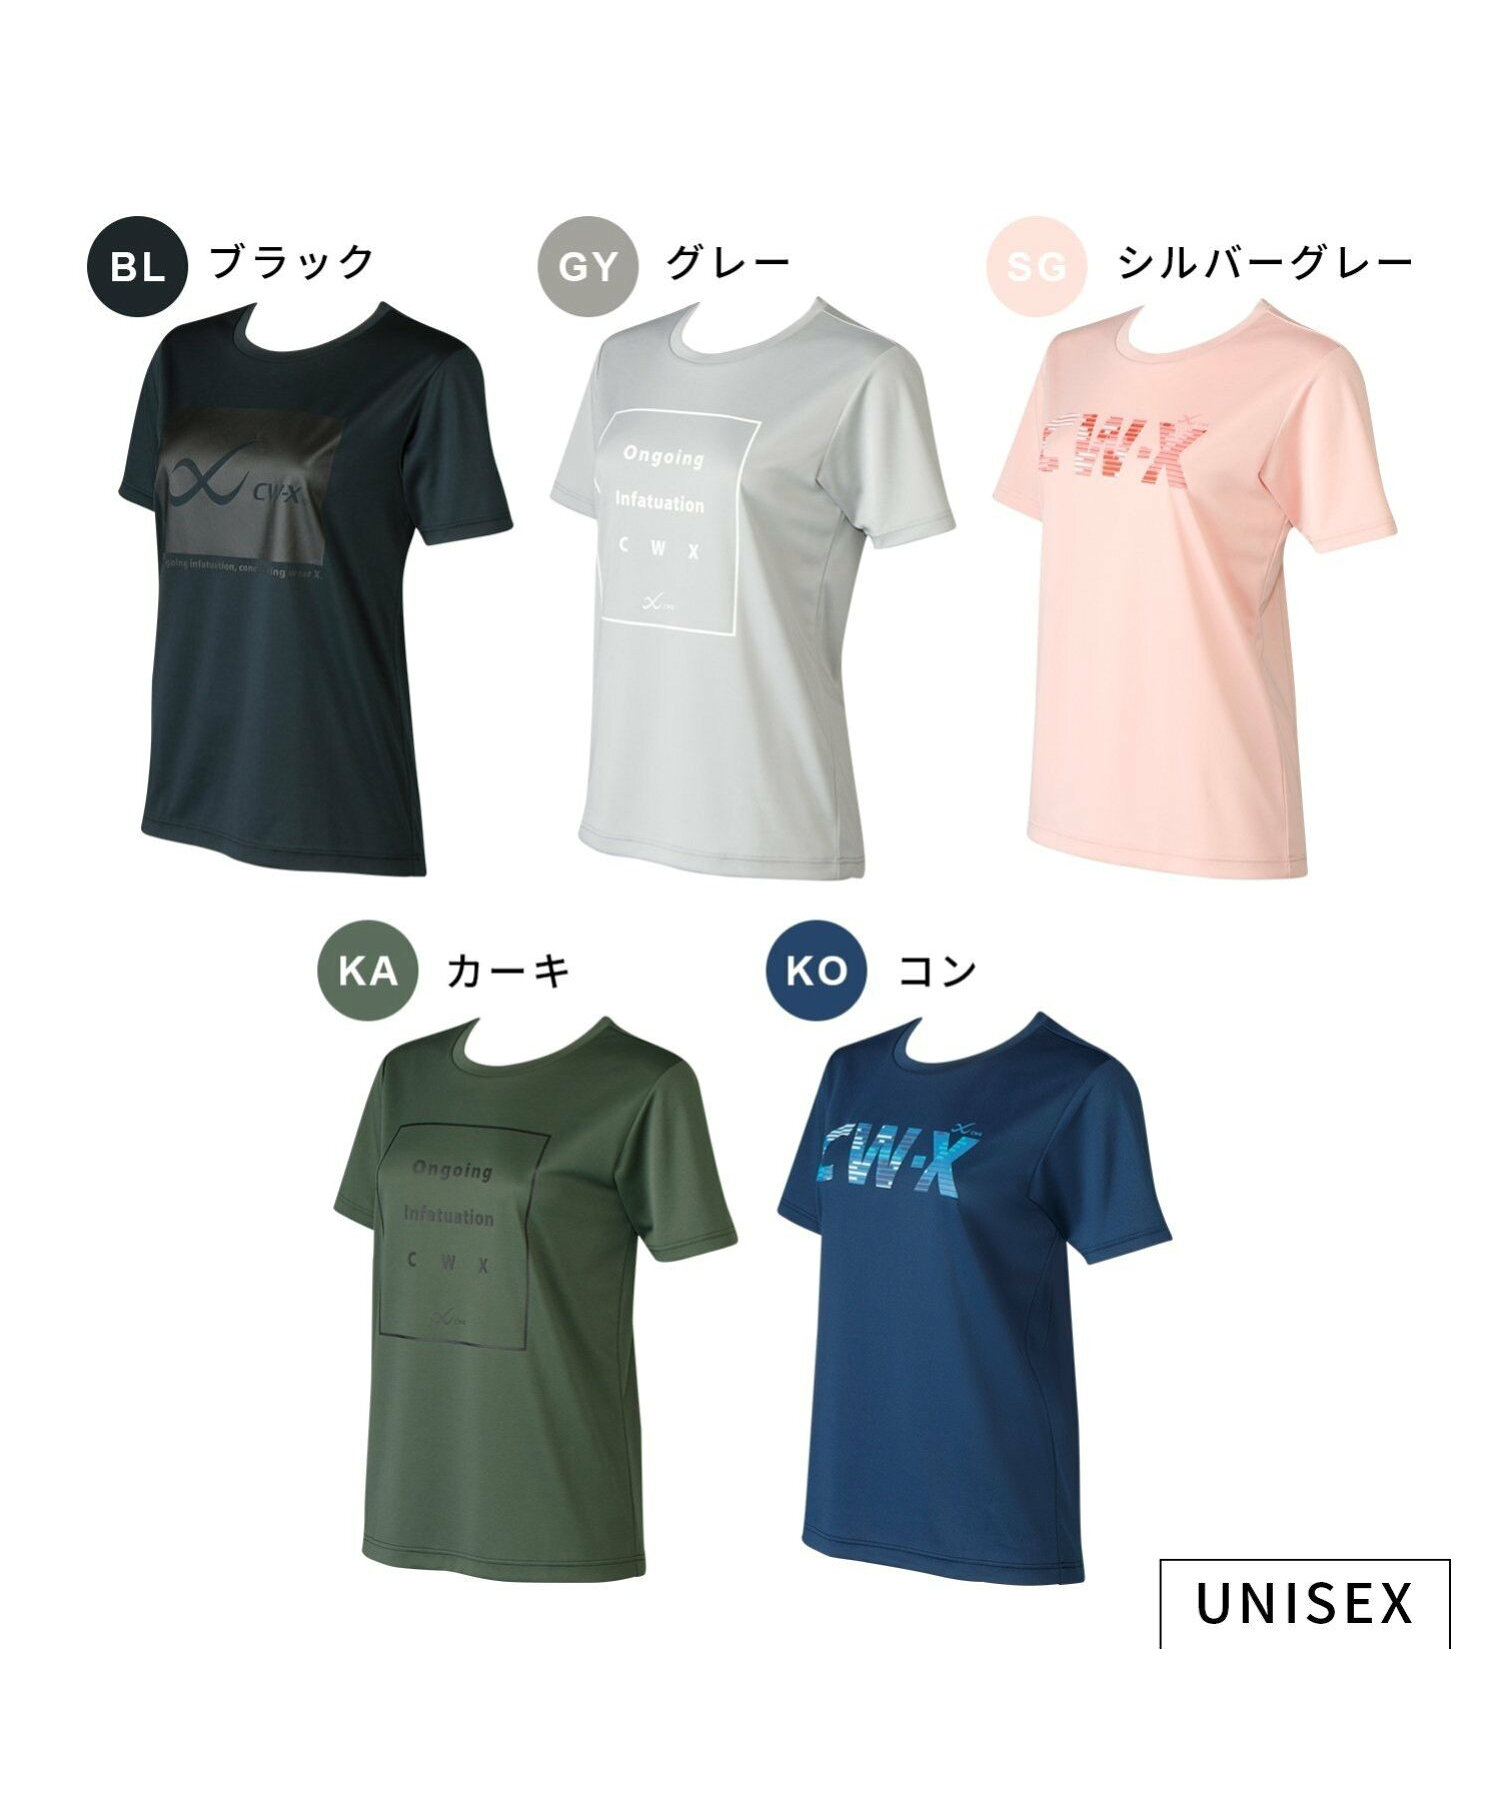 CW-X アウター Tシャツ 半袖 メッシュ素材